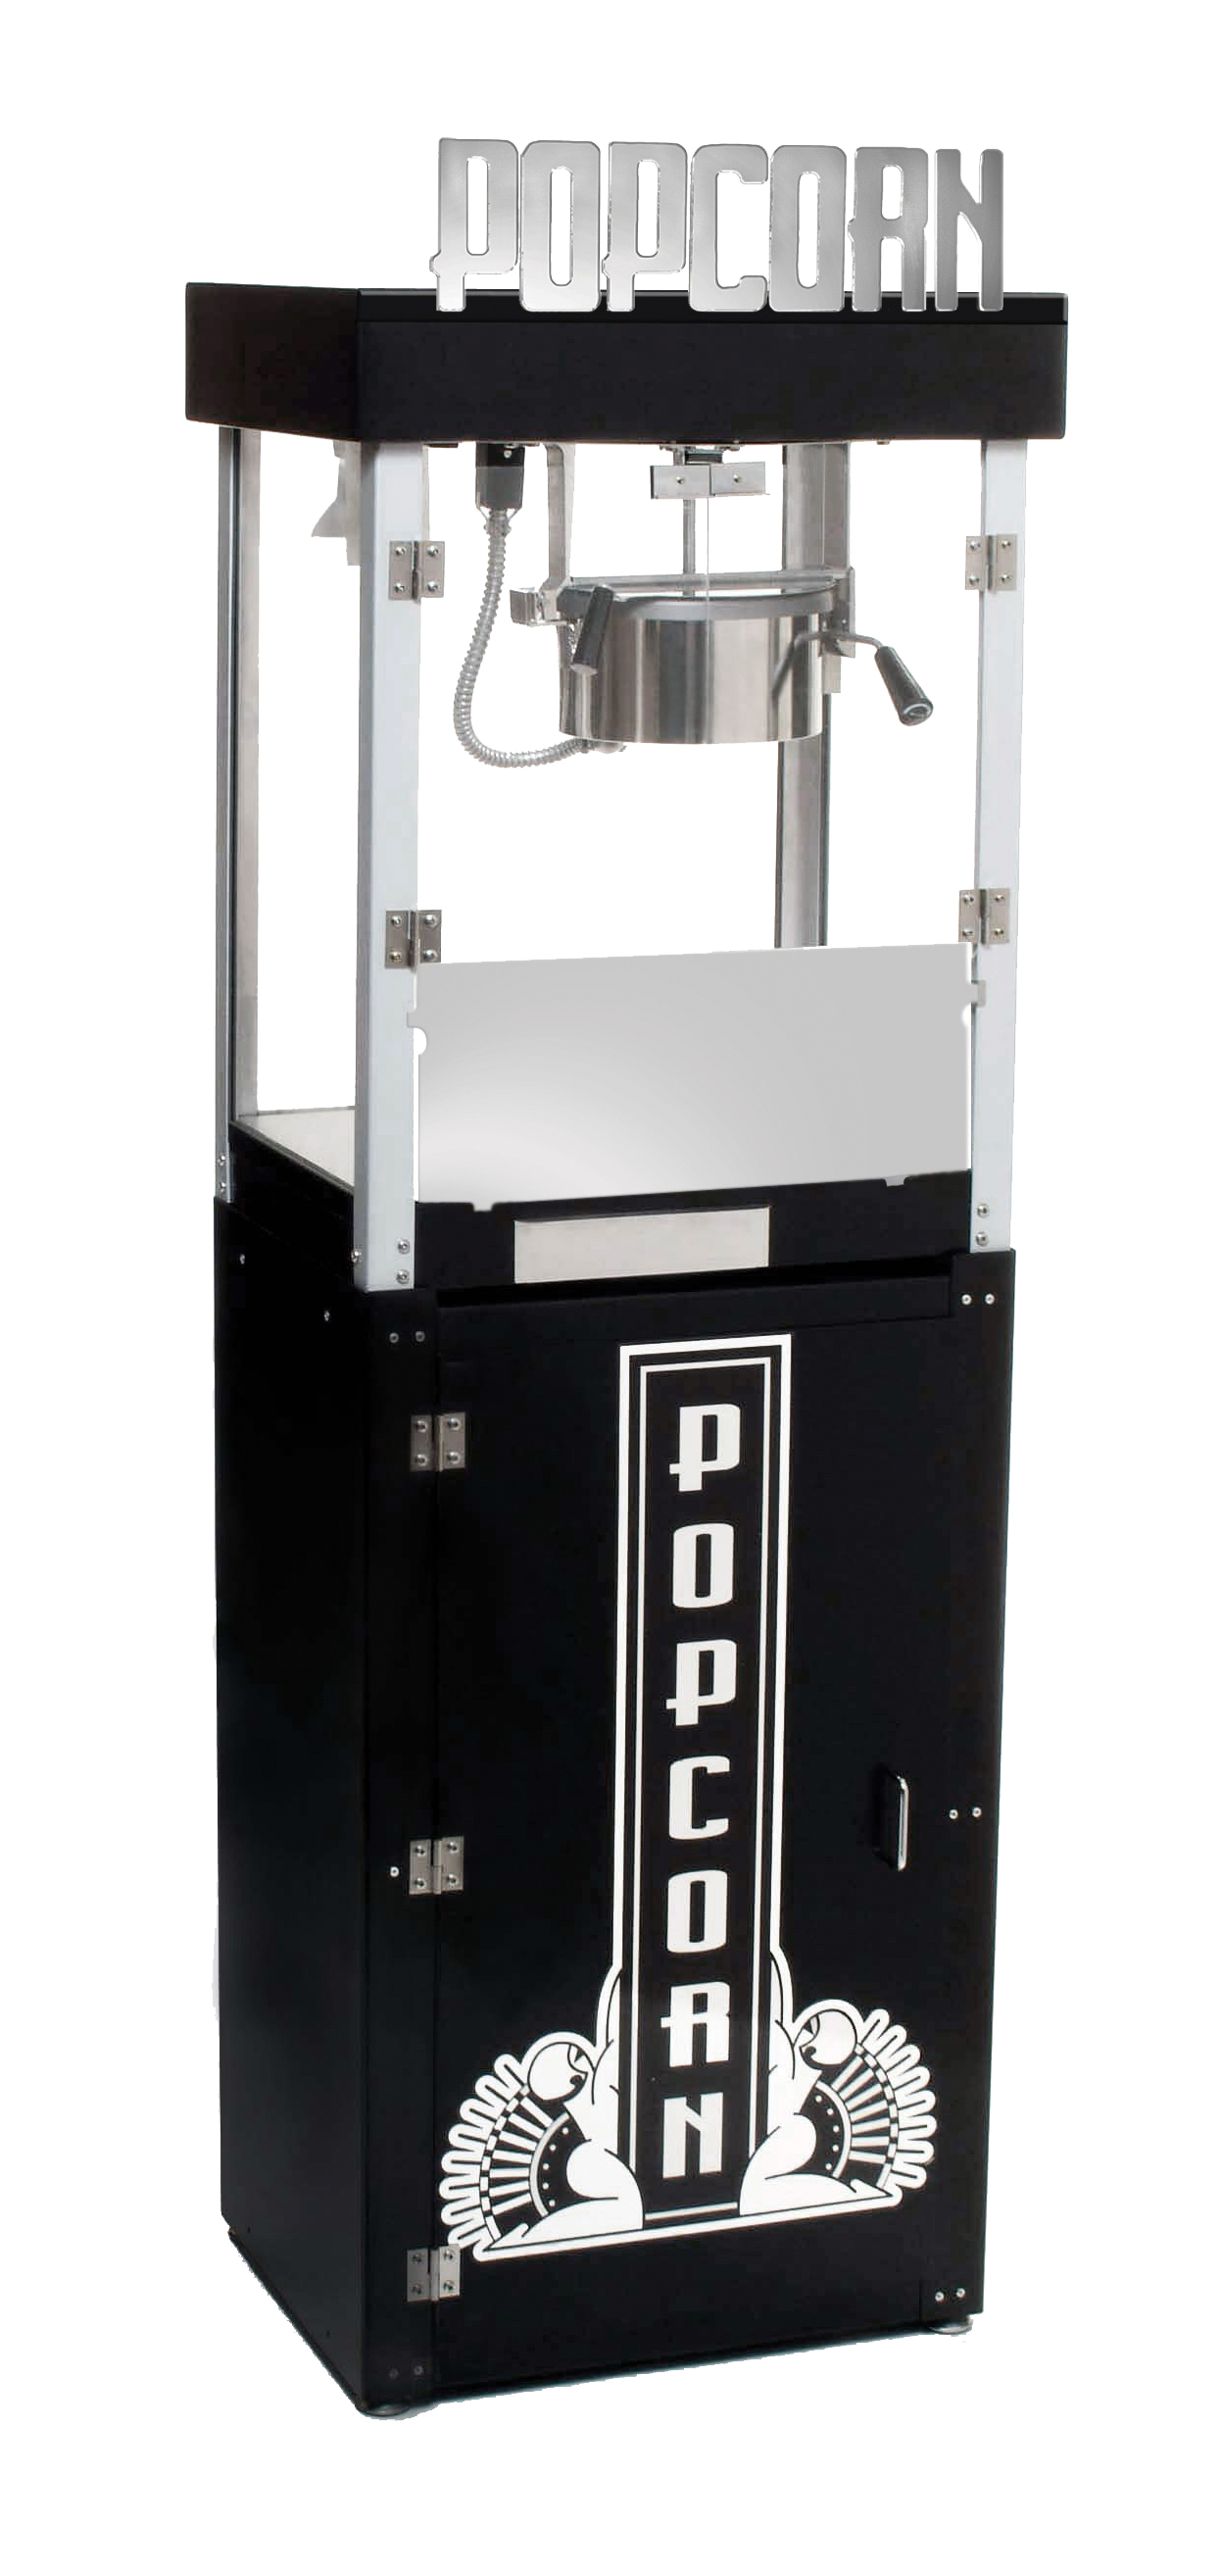 Benchmark 11065-30050 Metropolitan 6 oz Popcorn Machine w/Pedestal